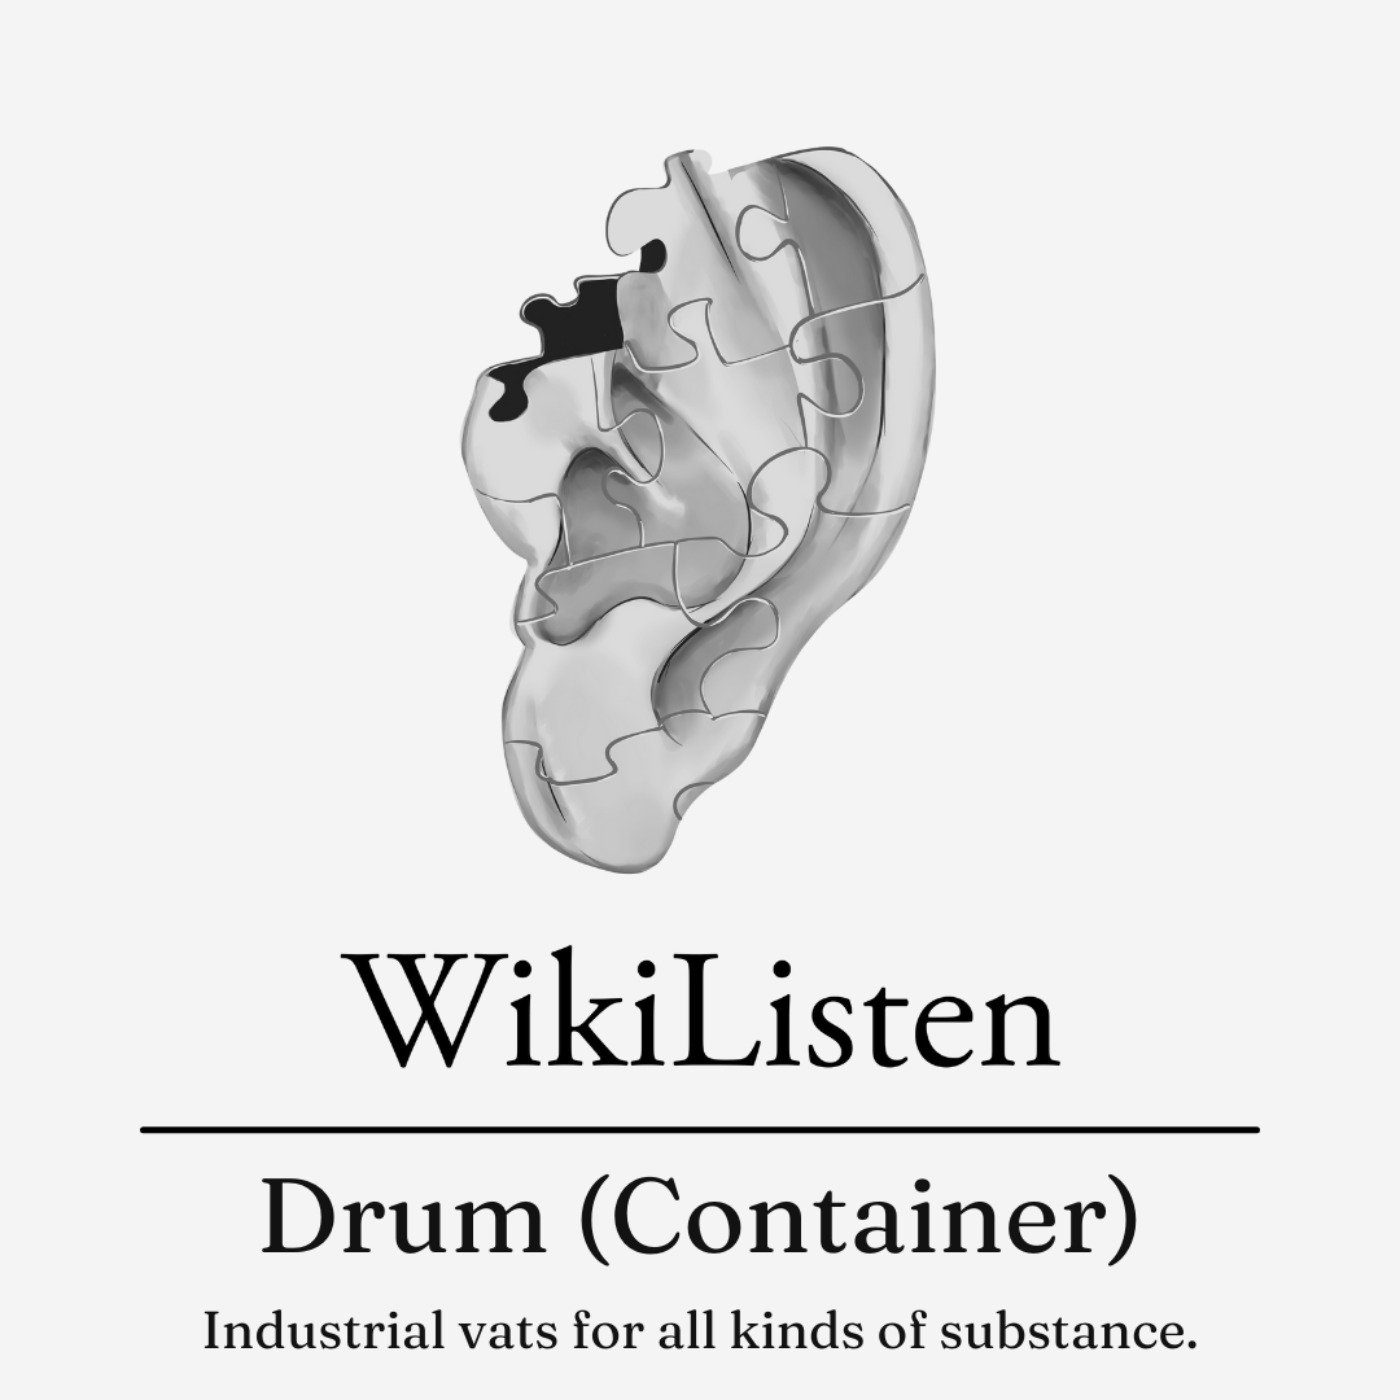 Drum (Container)